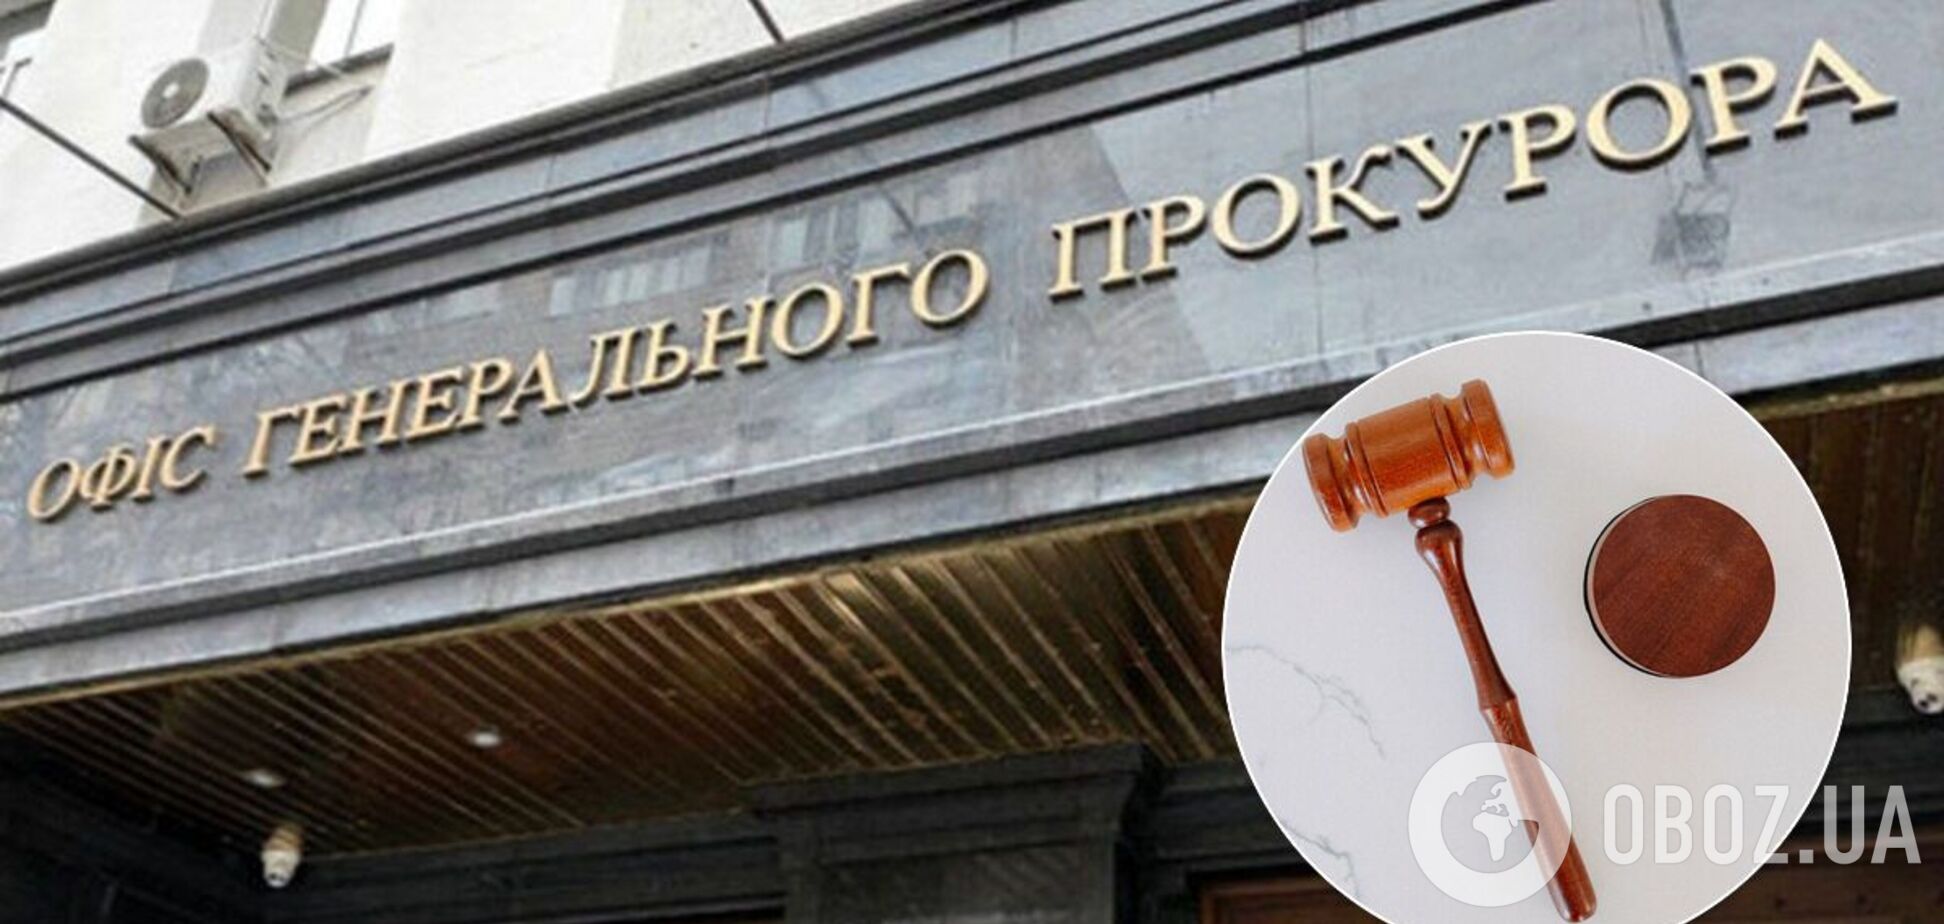 Заступник генпрокурора Симоненко несвоєчасно подав декларацію